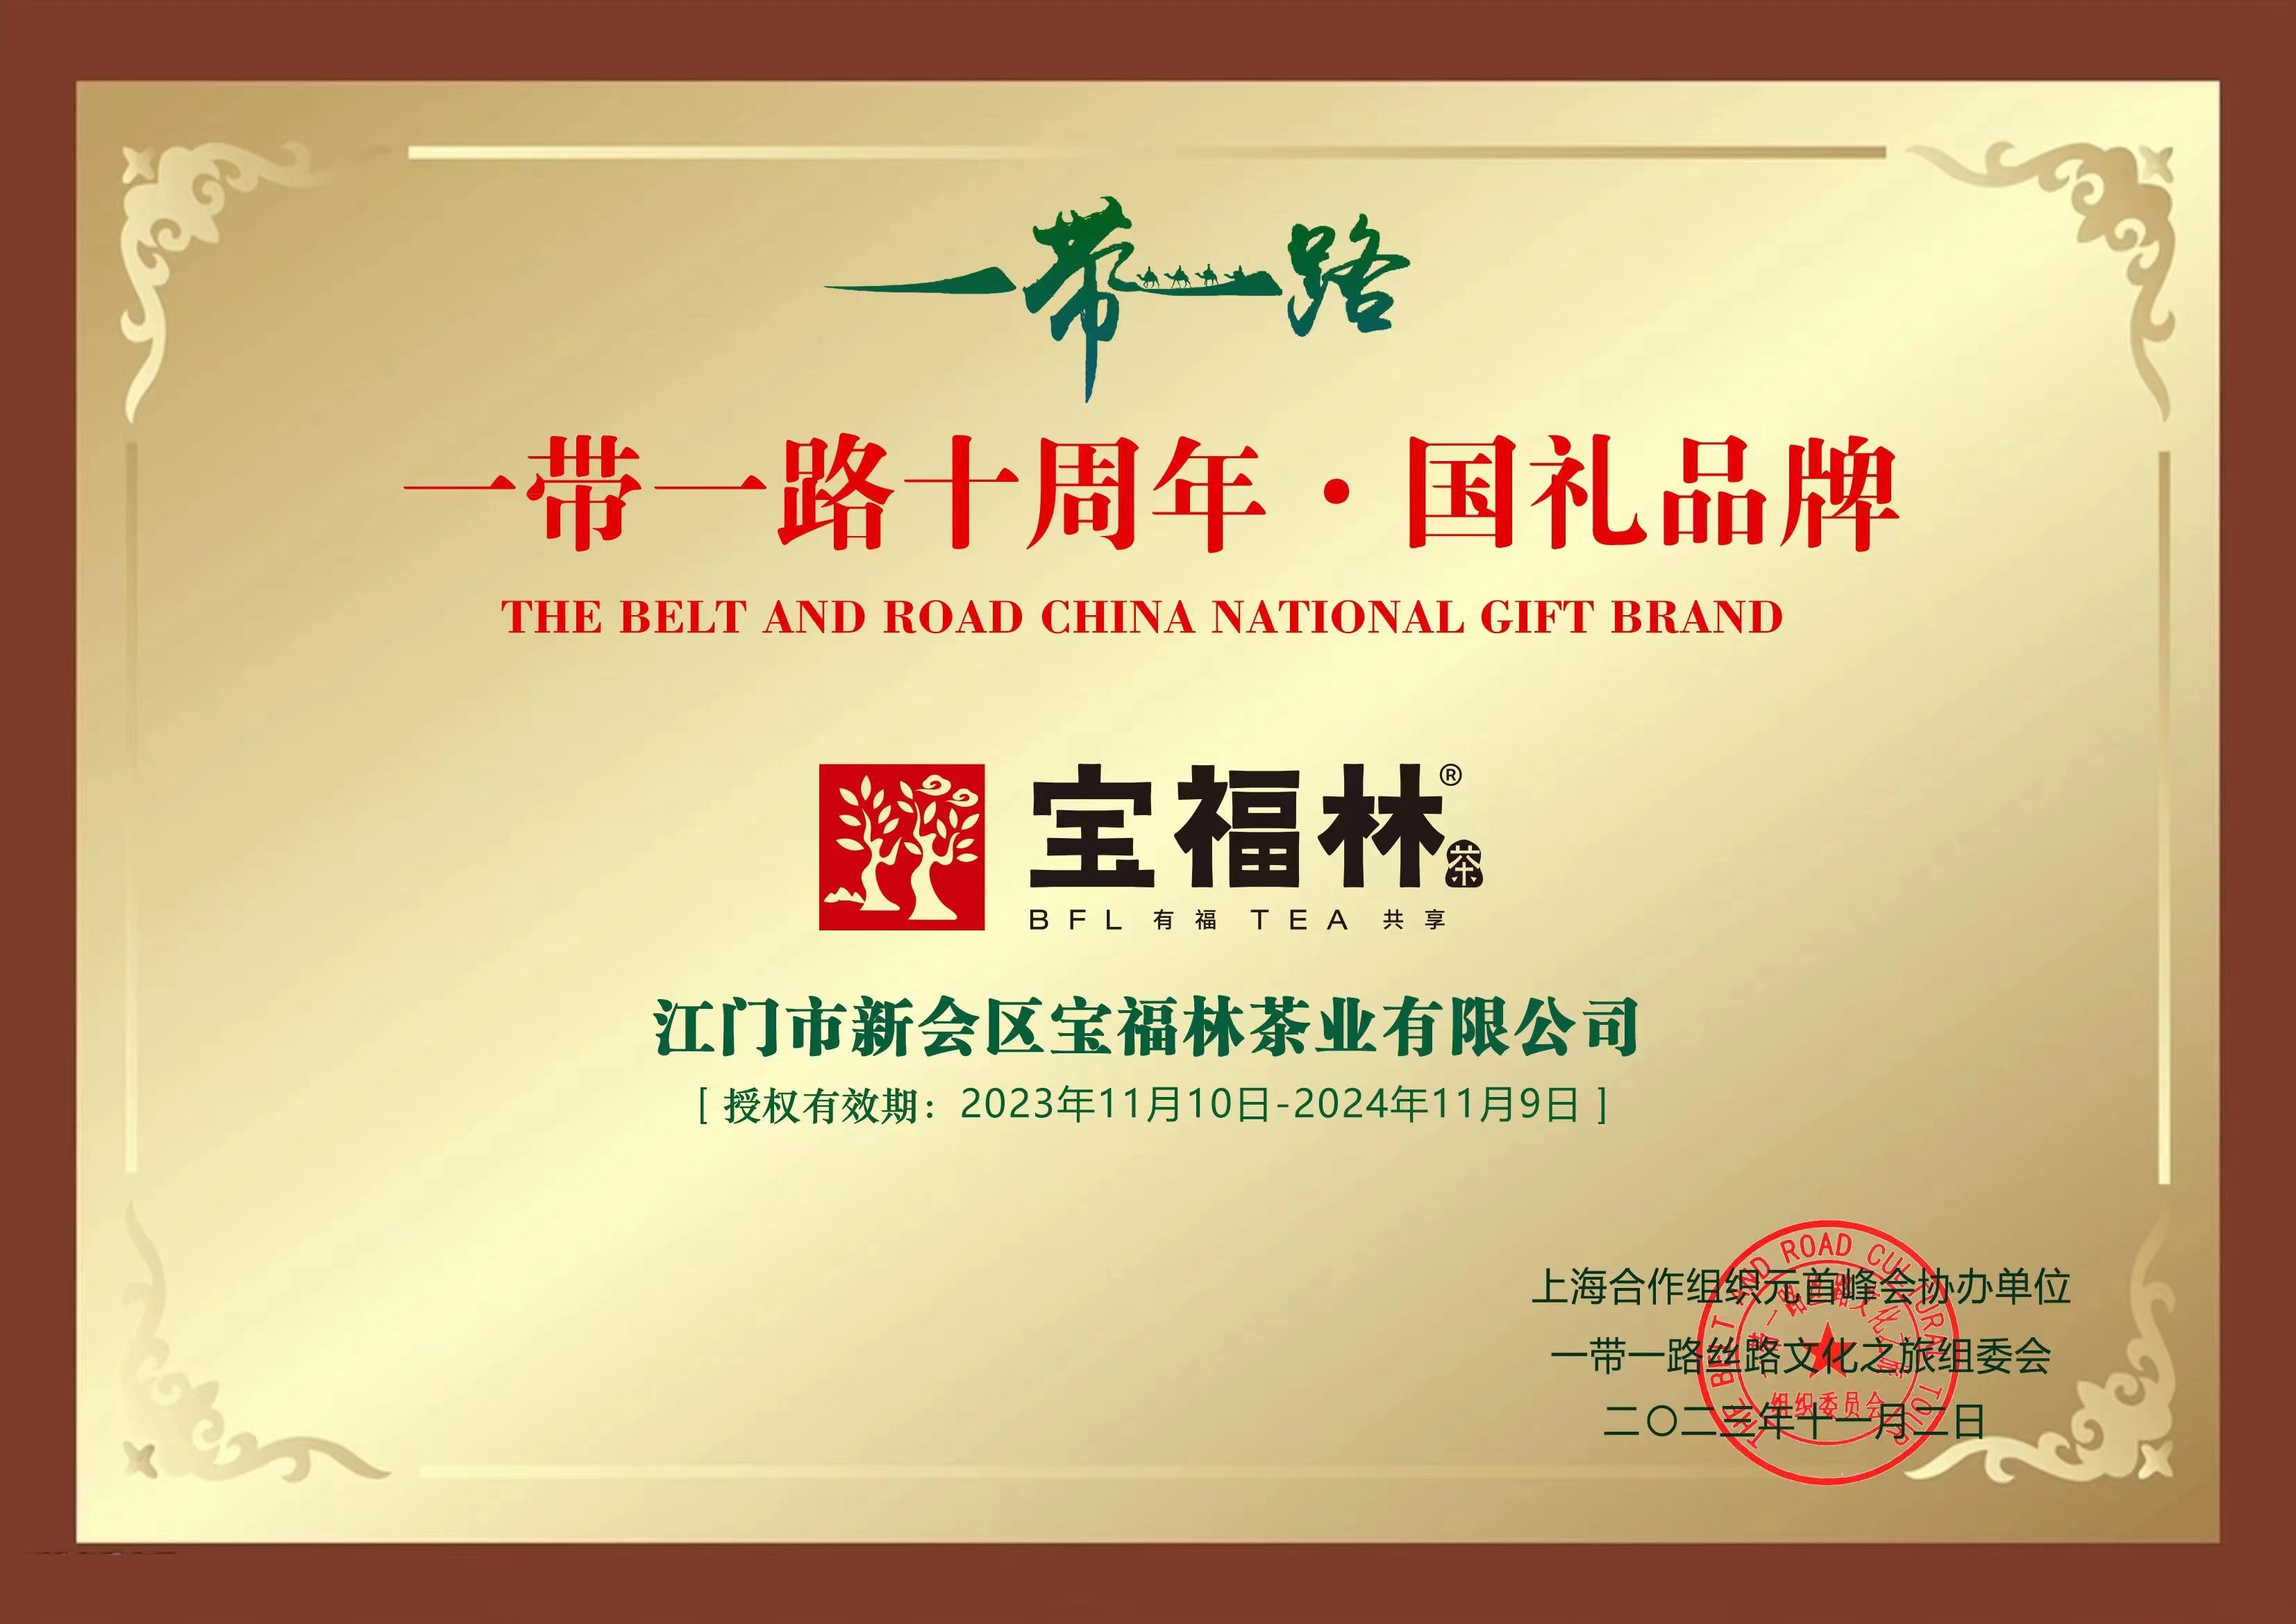 热烈庆祝宝福林茶业荣耀入选“一带一路十周年·国礼品牌”